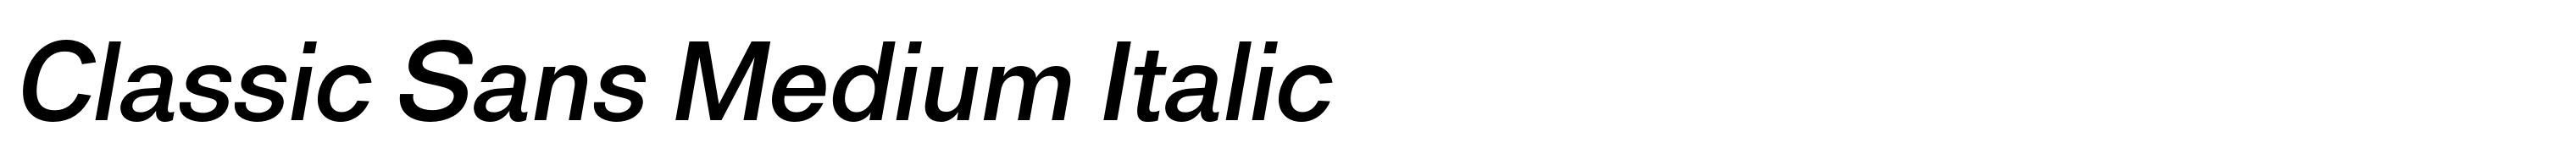 Classic Sans Medium Italic